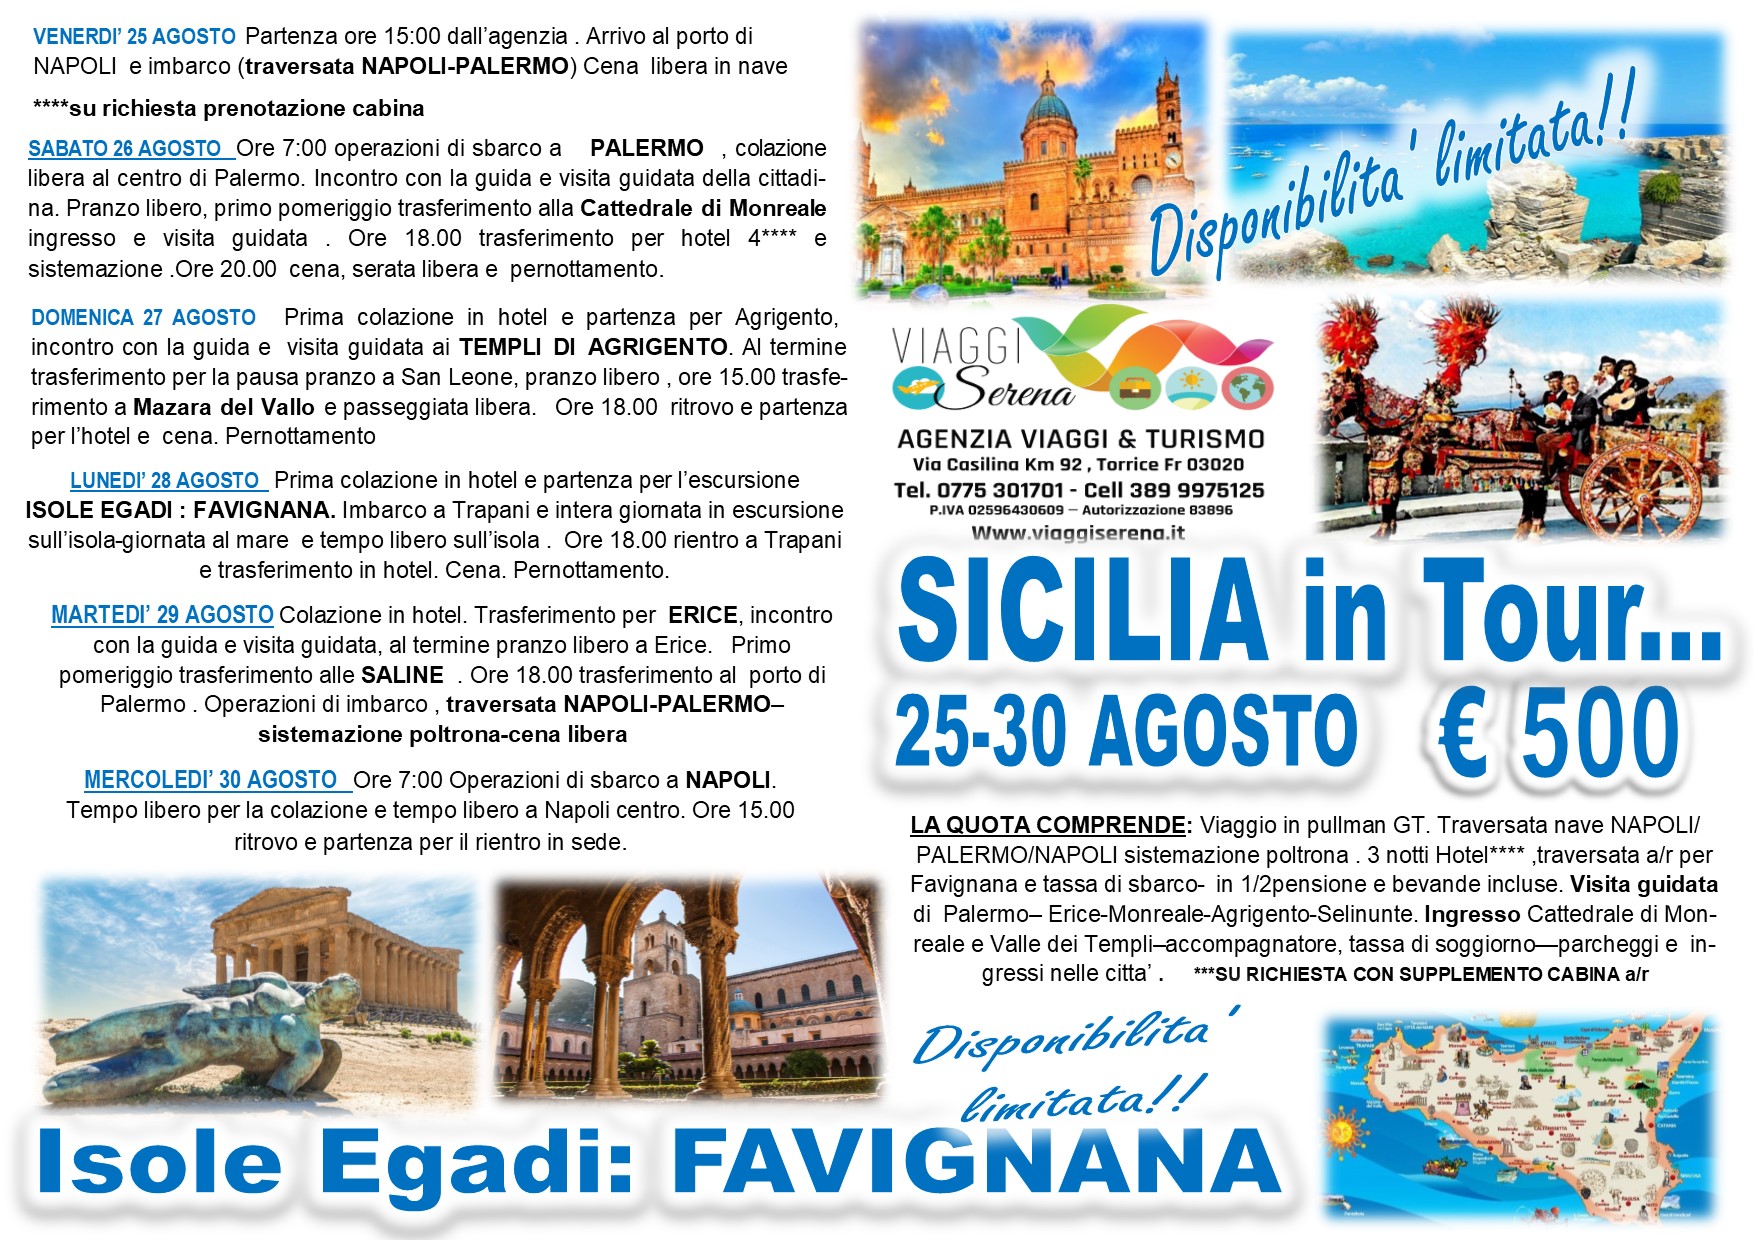 Viaggi di Gruppo: Sicilia in Tour , Palermo, Agrigento, Erice, Favignana, Cattedrale di Monreale 25-30 Agosto €500,00